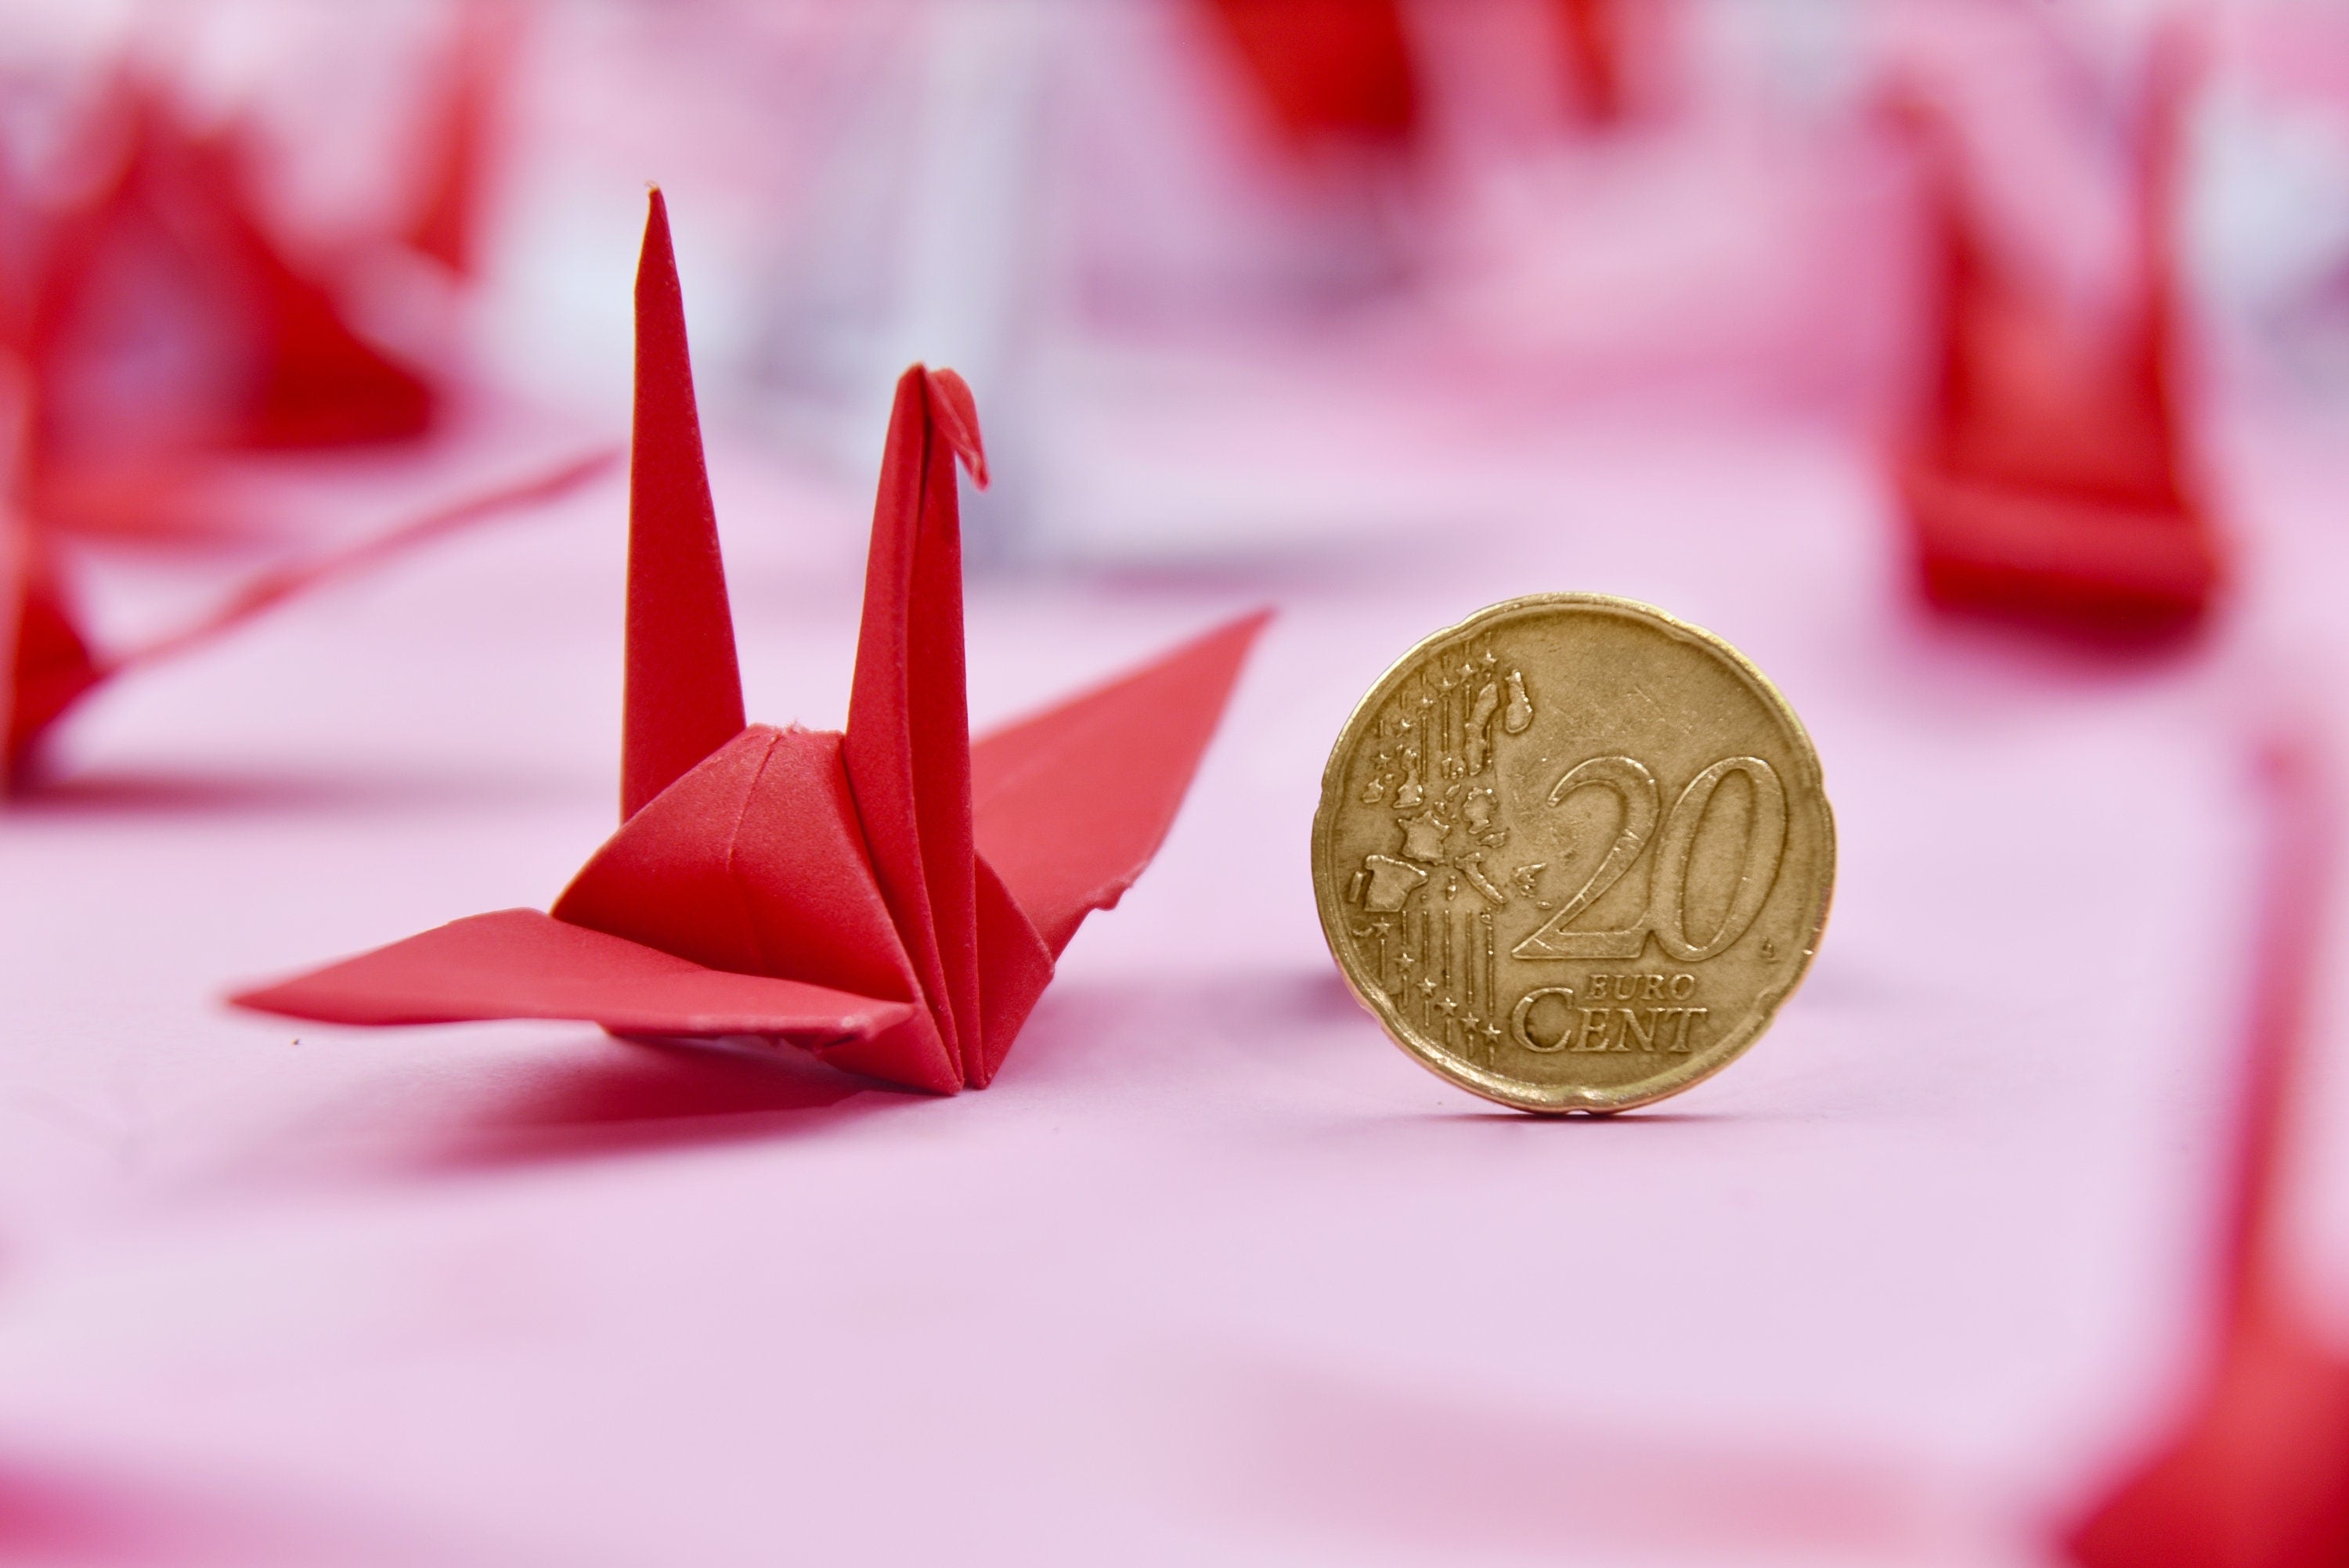 100 gru di carta origami - tonalità rosa rossa - 3x3 pollici - pieghevoli fatte a mano per decorazioni di nozze, matrimoni giapponesi, San Valentino